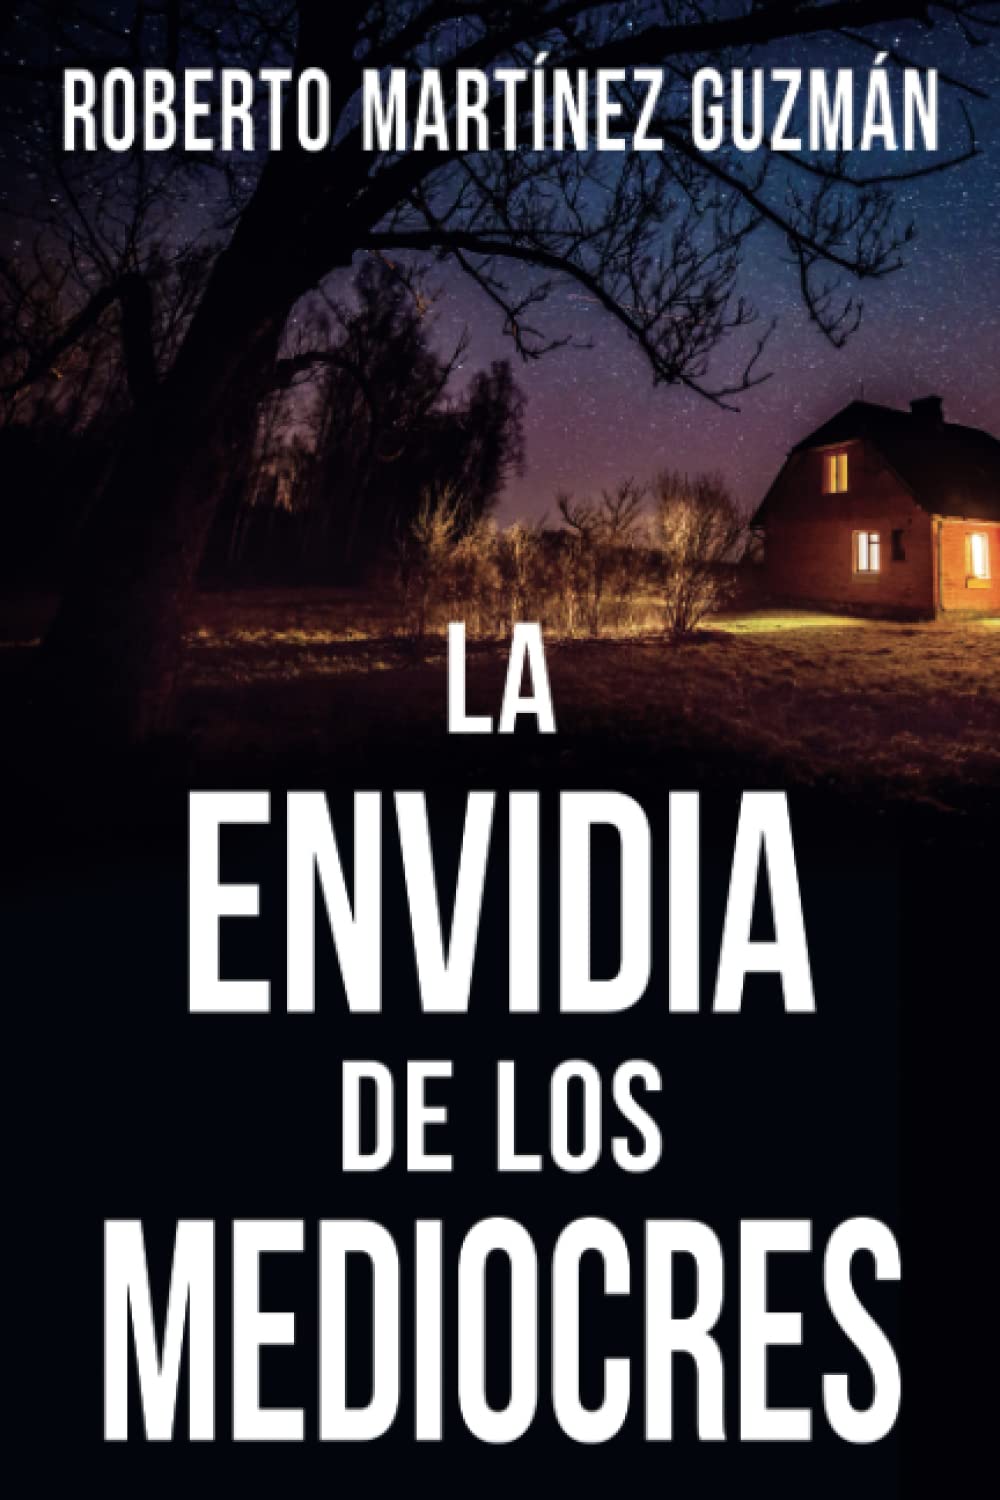 La envidia de los mediocres (español language, Amazon)